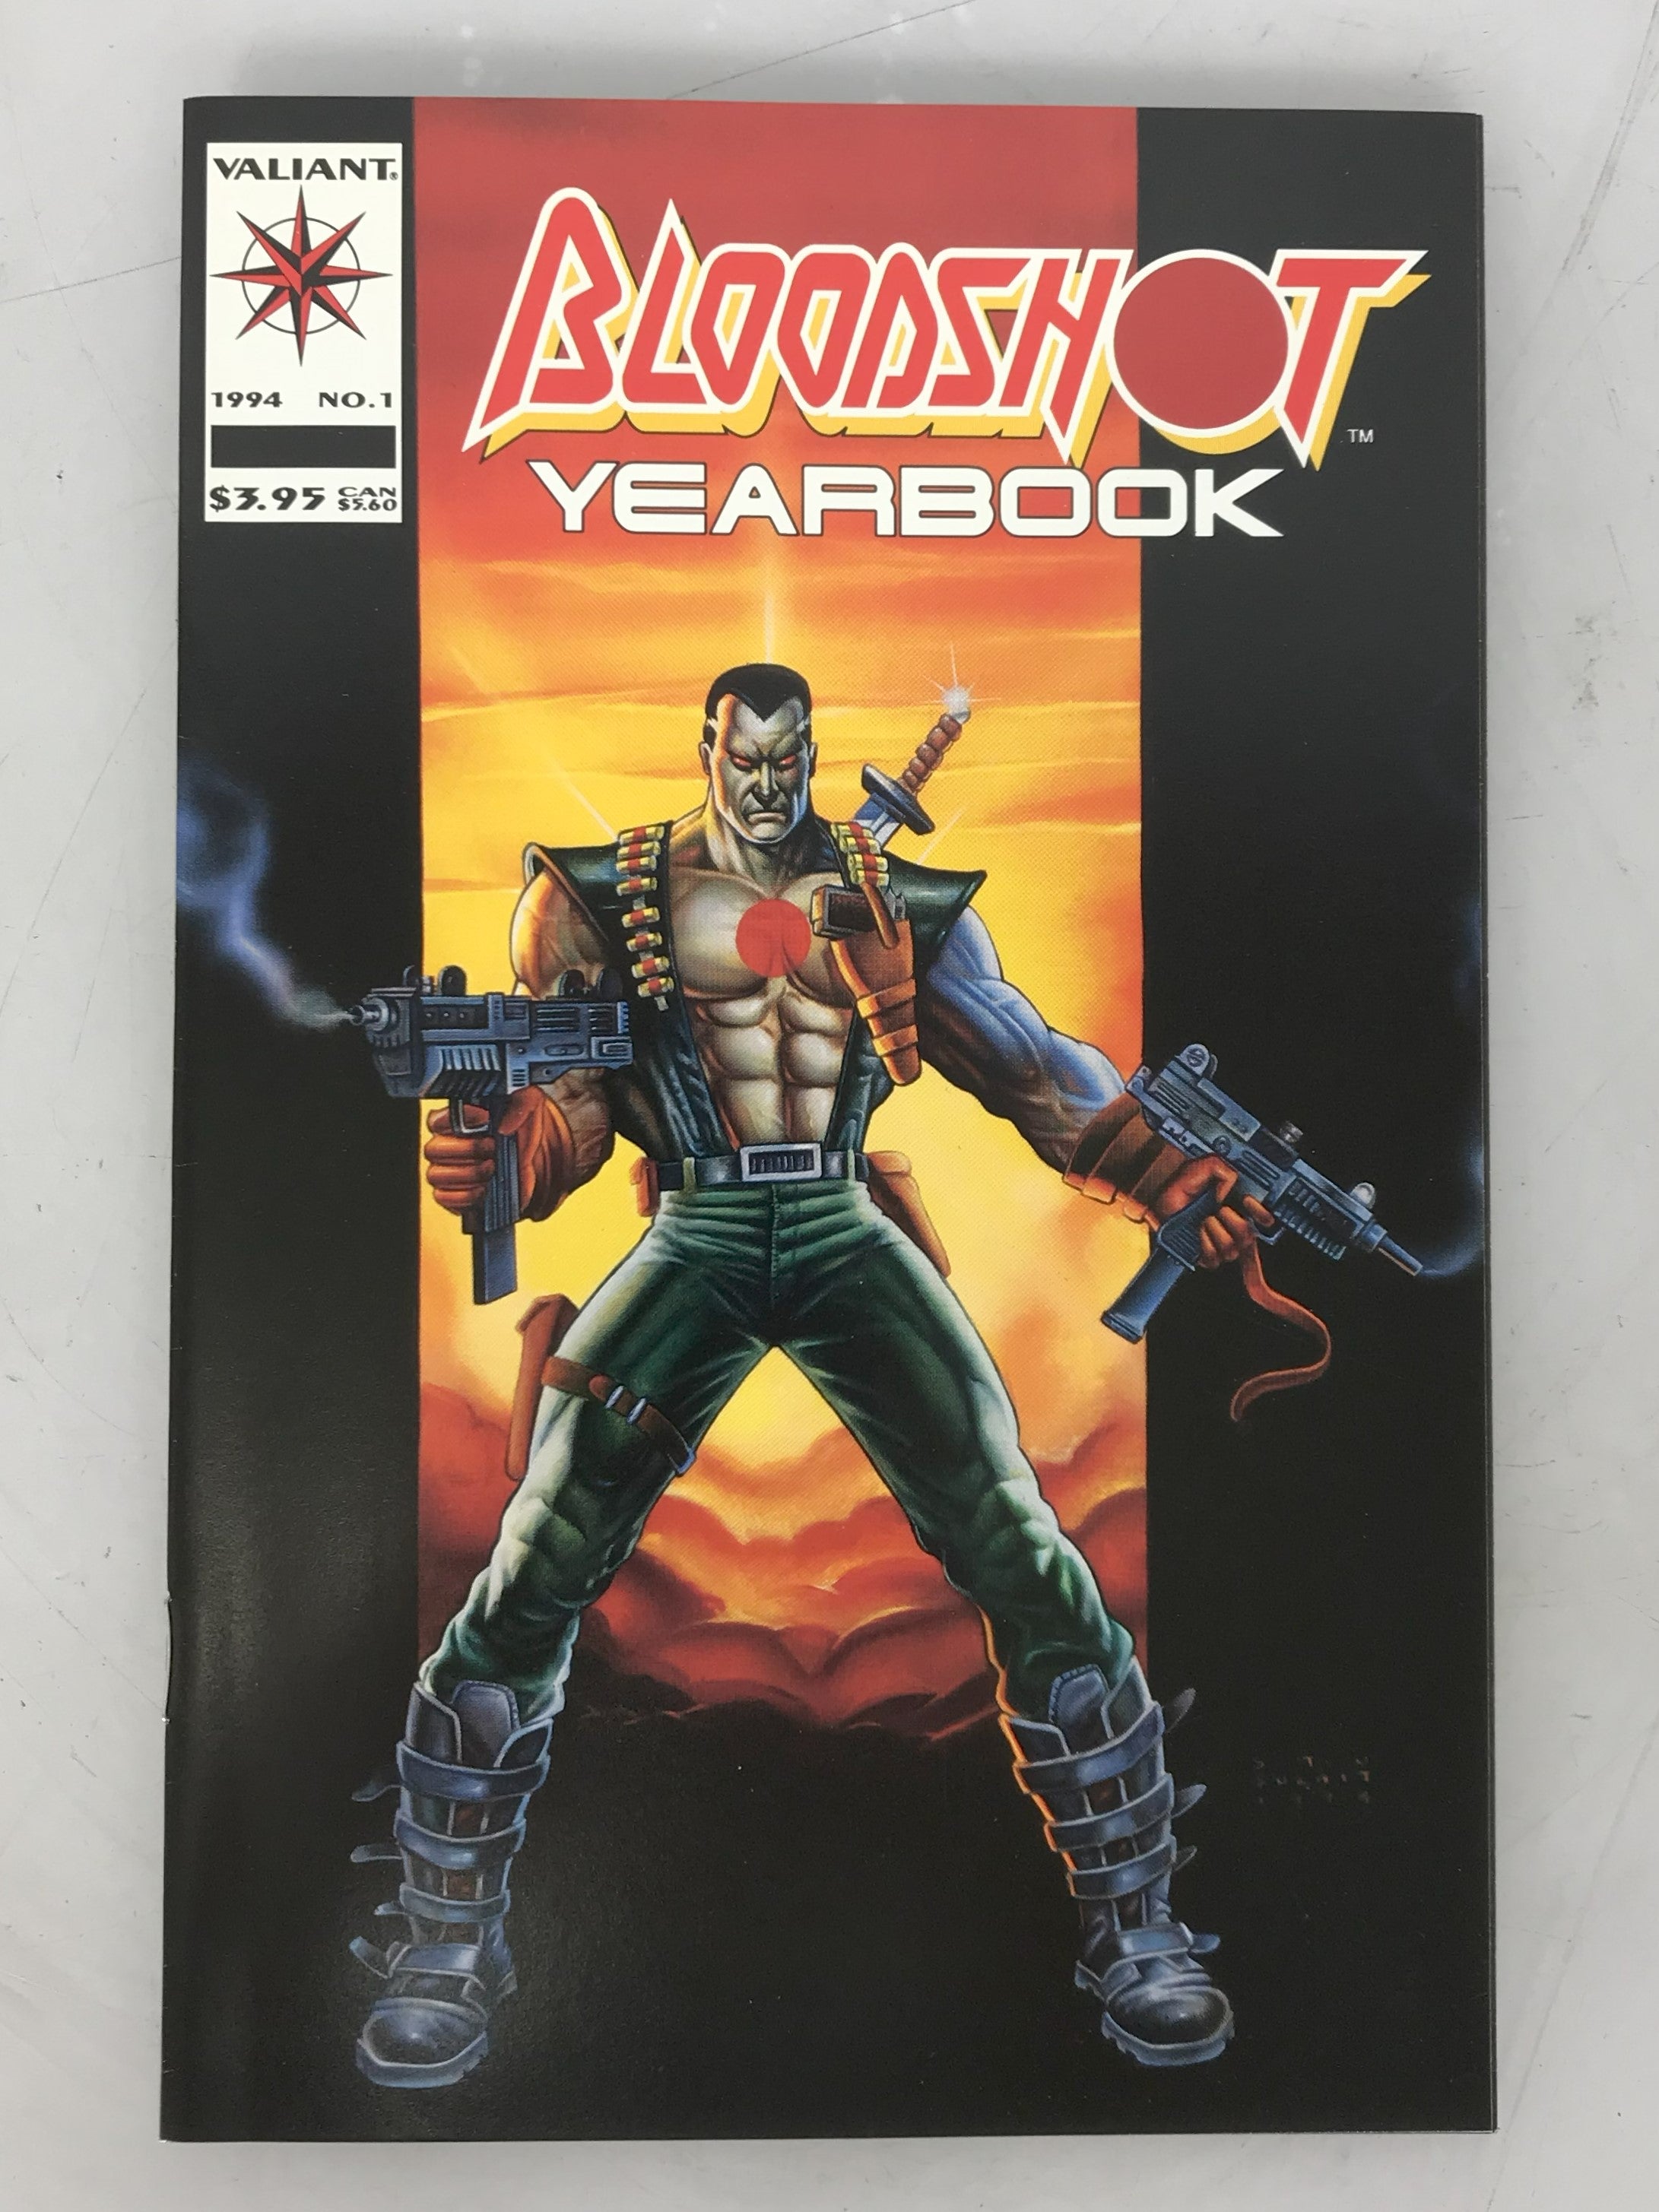 Bloodshot Yearbook 1 1994